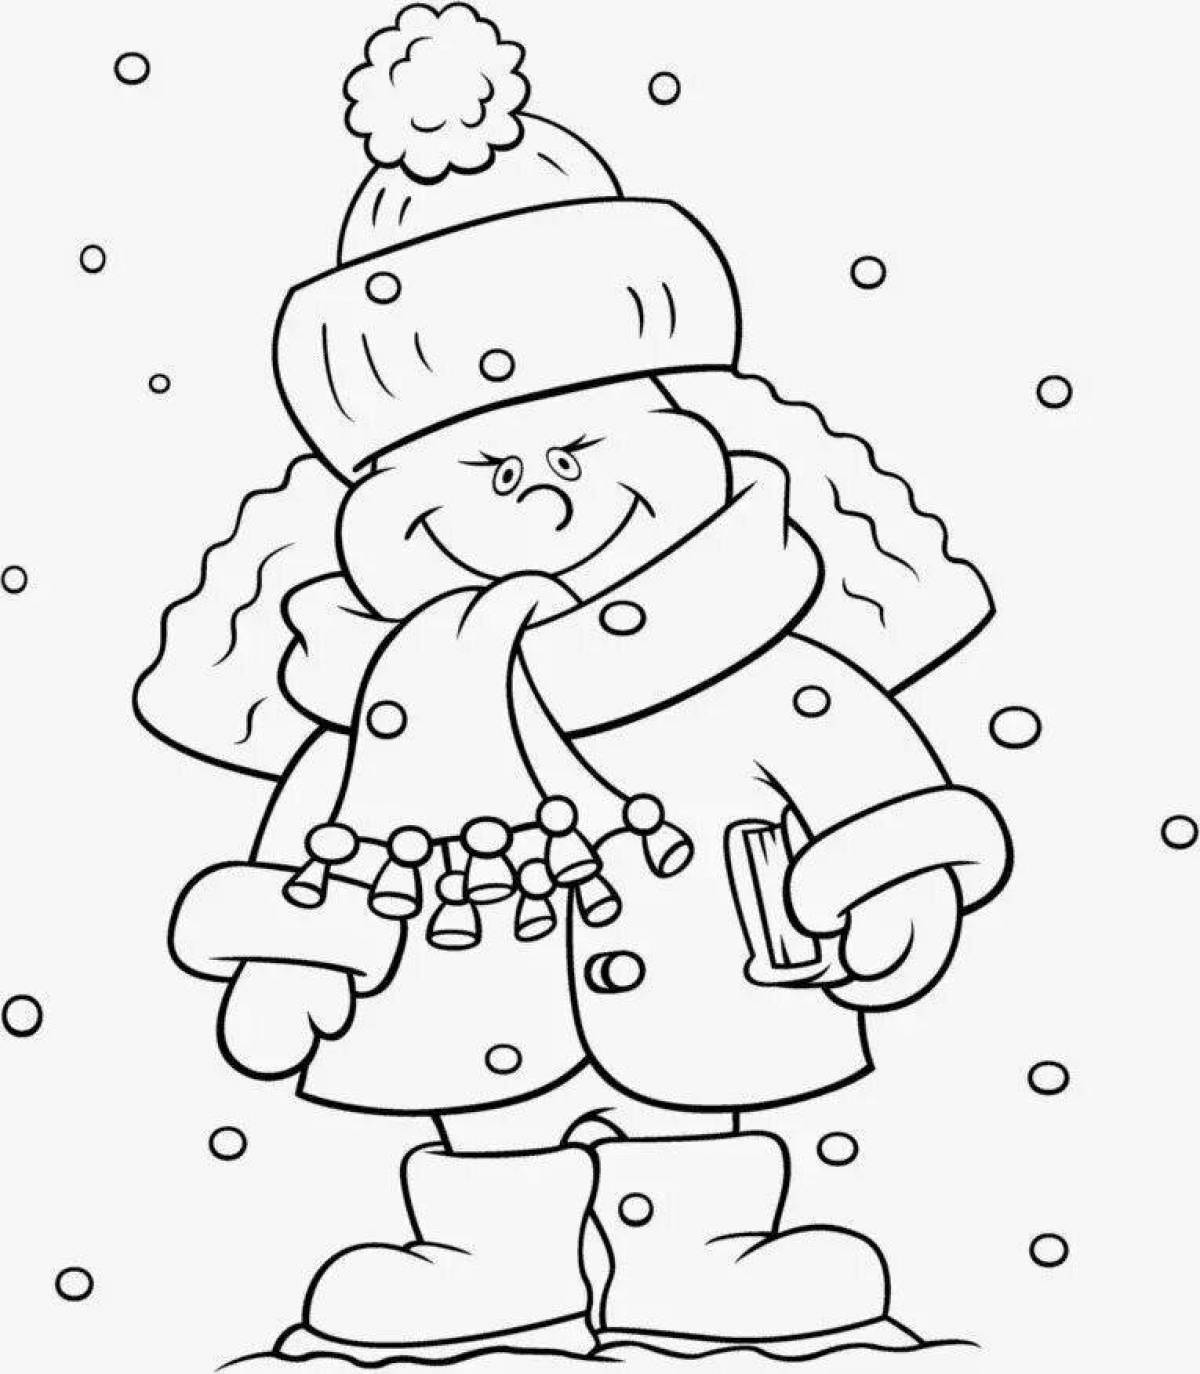 Теплый ребенок в зимней одежде